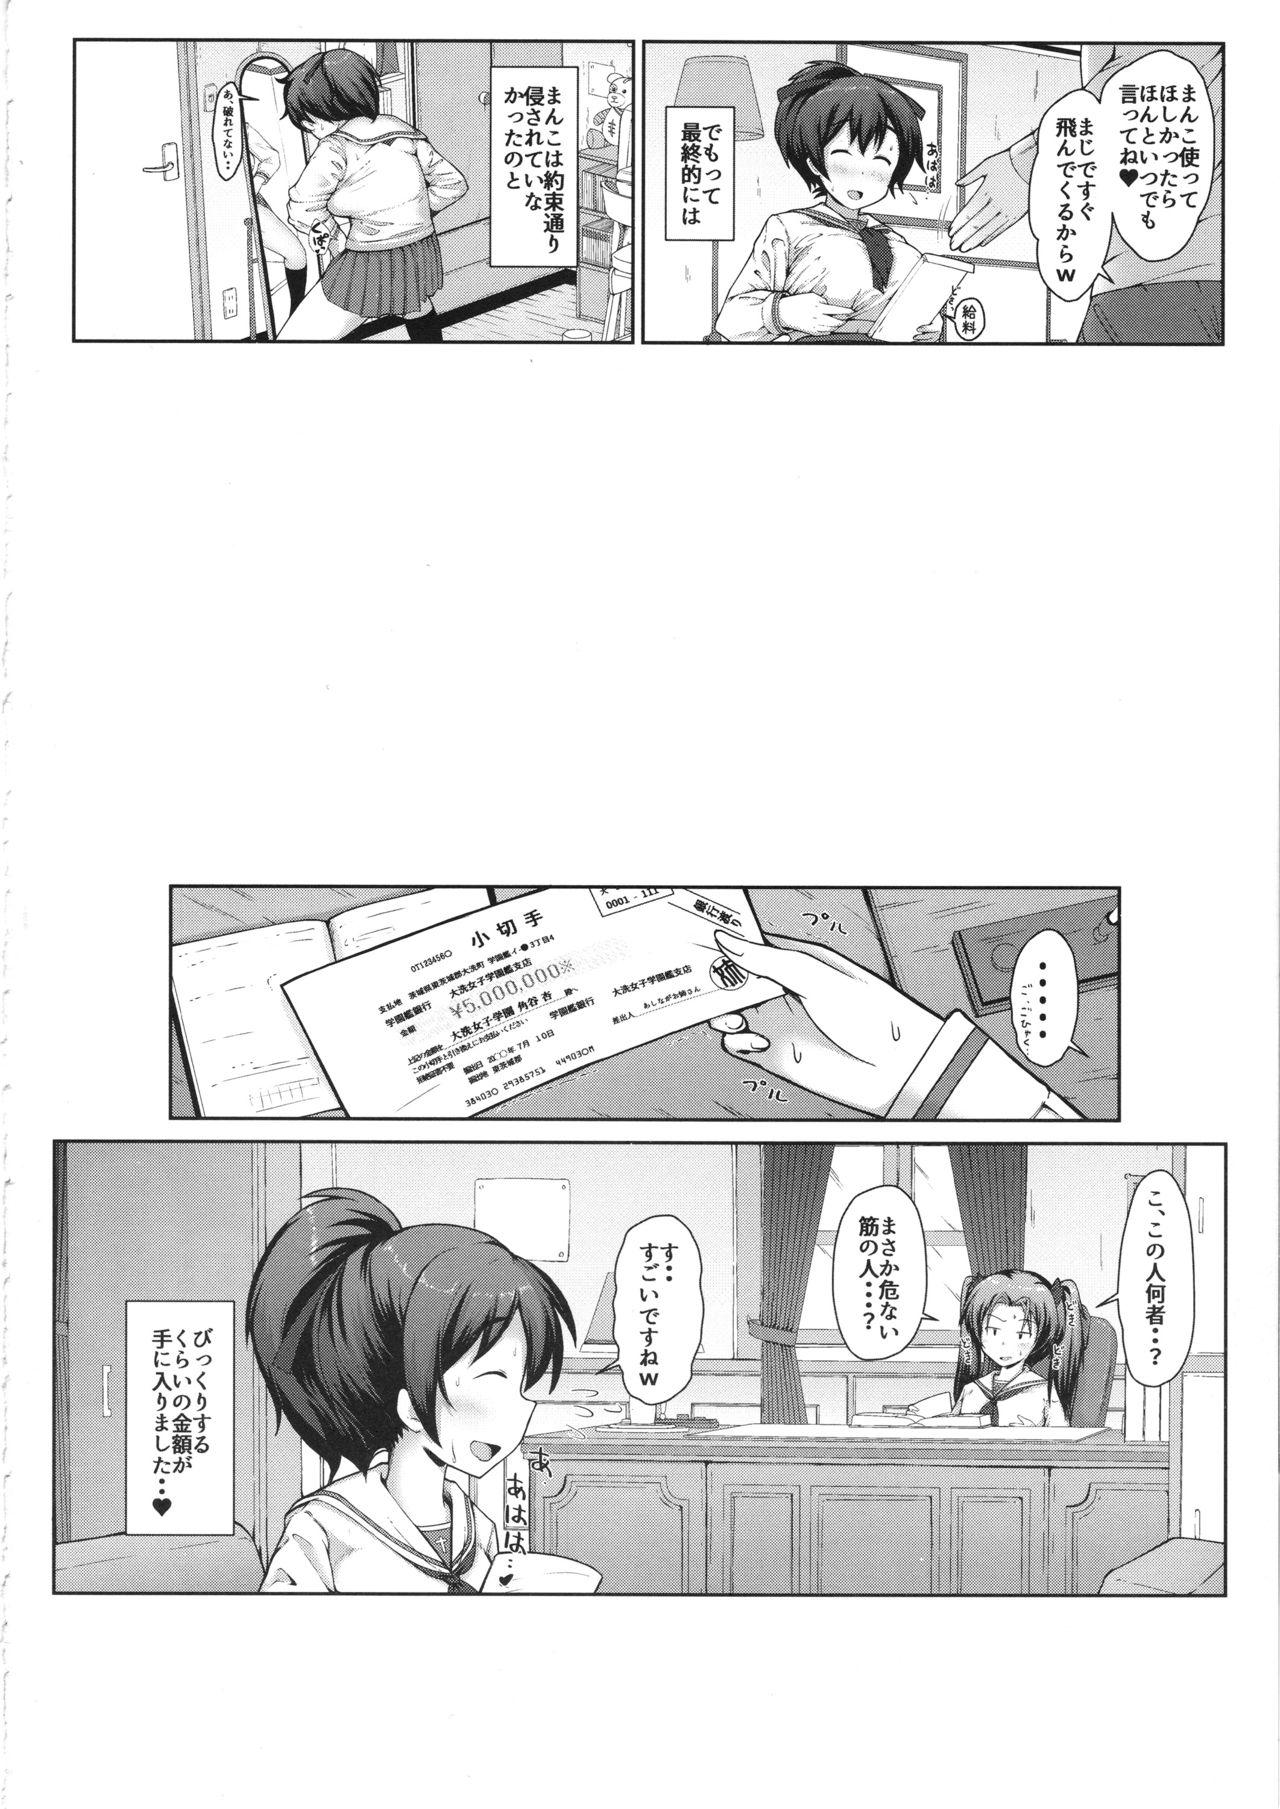 Fresh Yuzu-chan no Renkinjutsu - Girls und panzer Para - Page 19